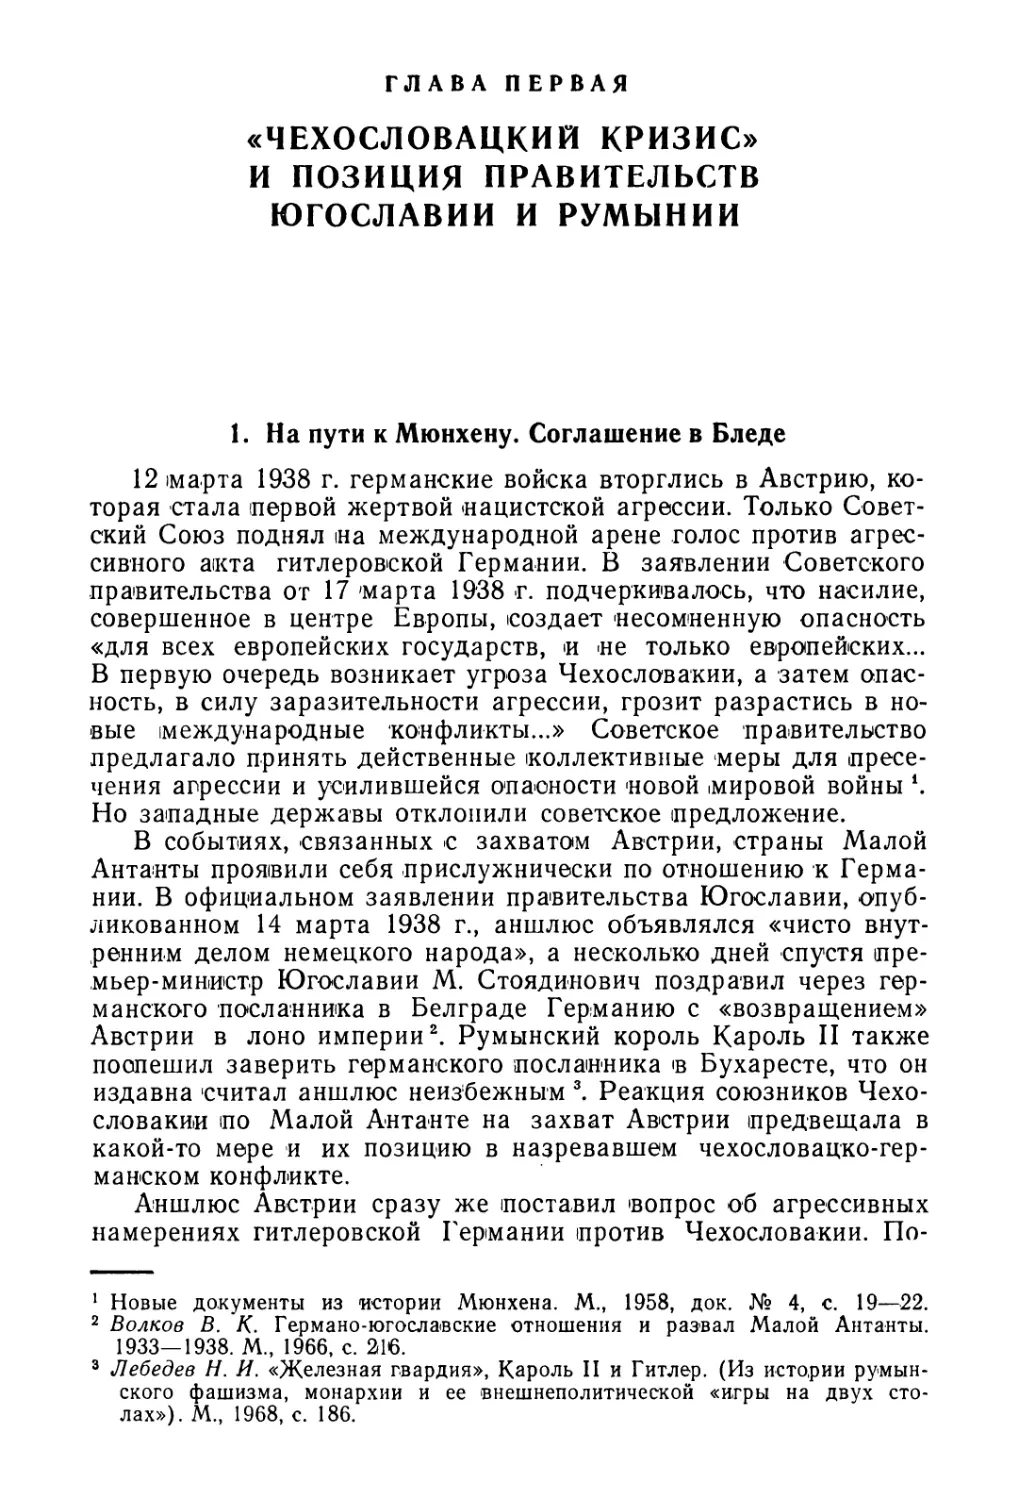 Глава первая. «Чехословацкий кризис» и позиция правительства Югославии и Румынии